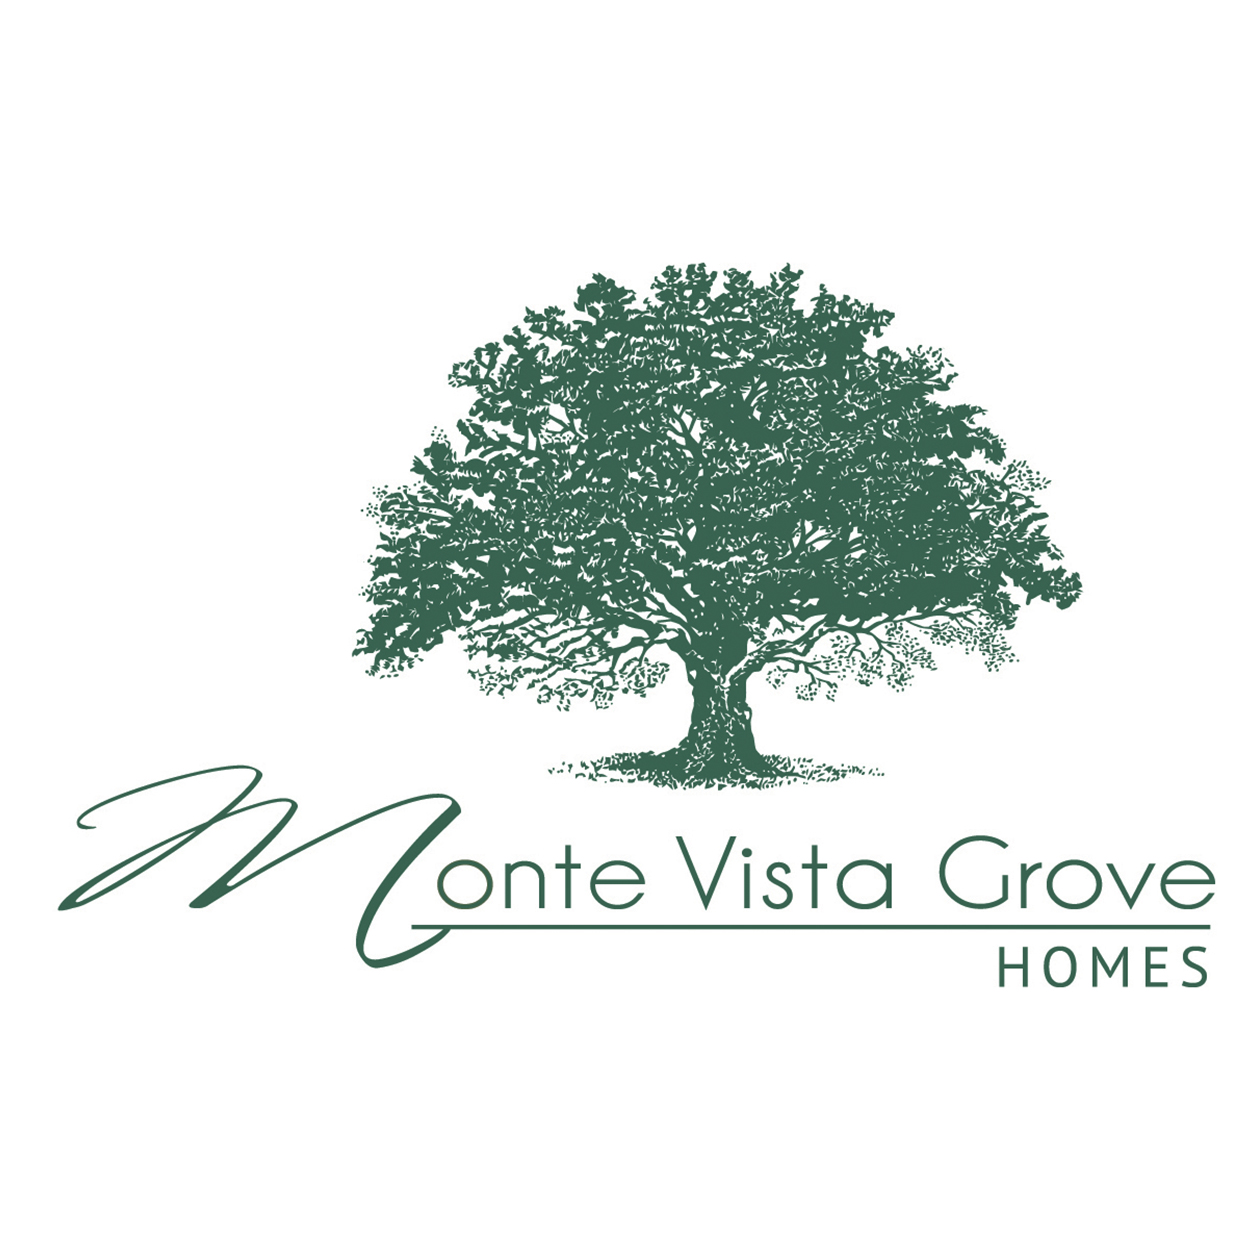 Monte Vista Grove square logo